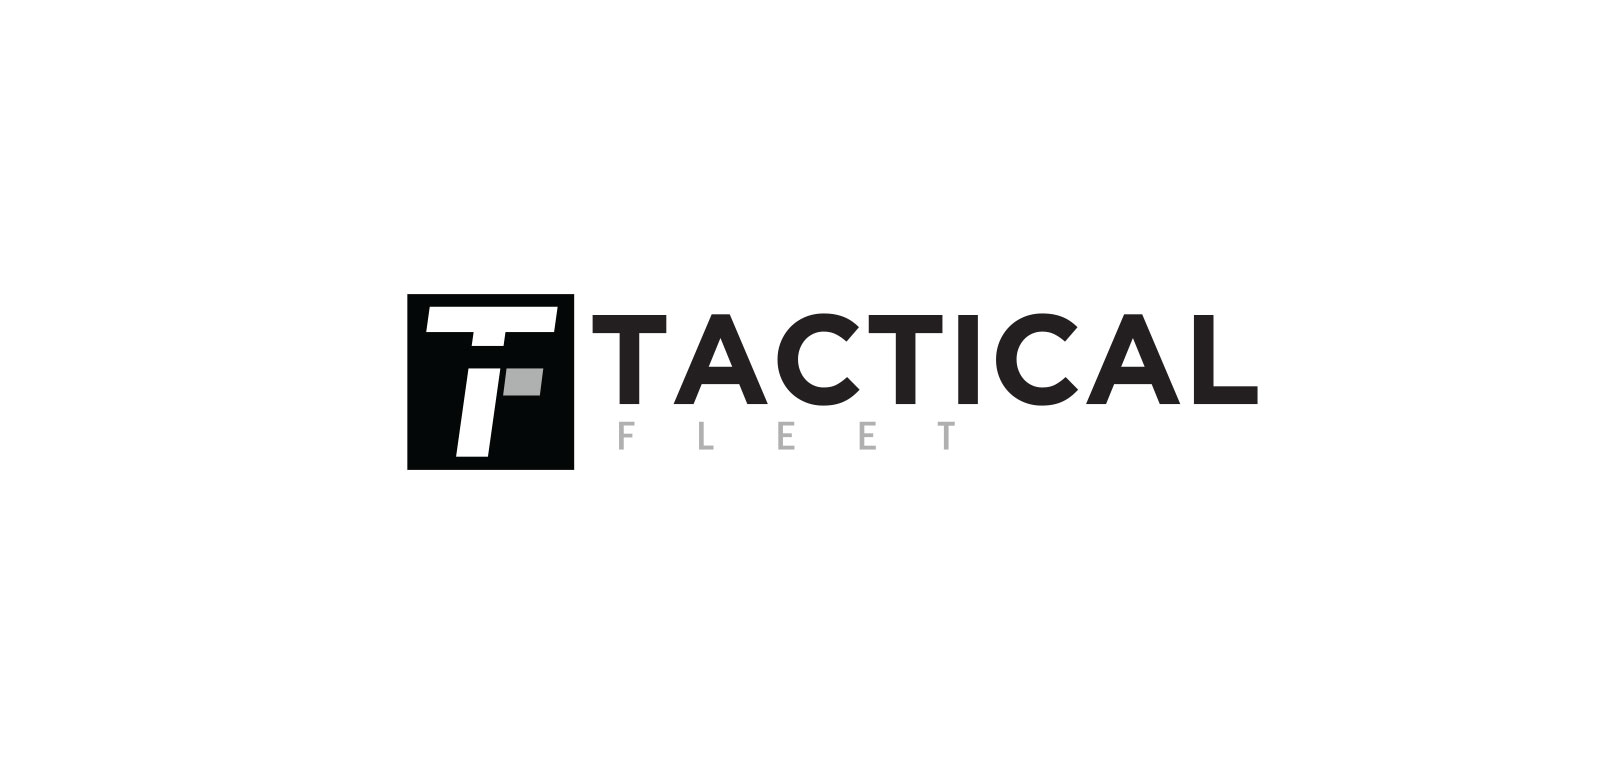 Tactical Fleet Logo- BW